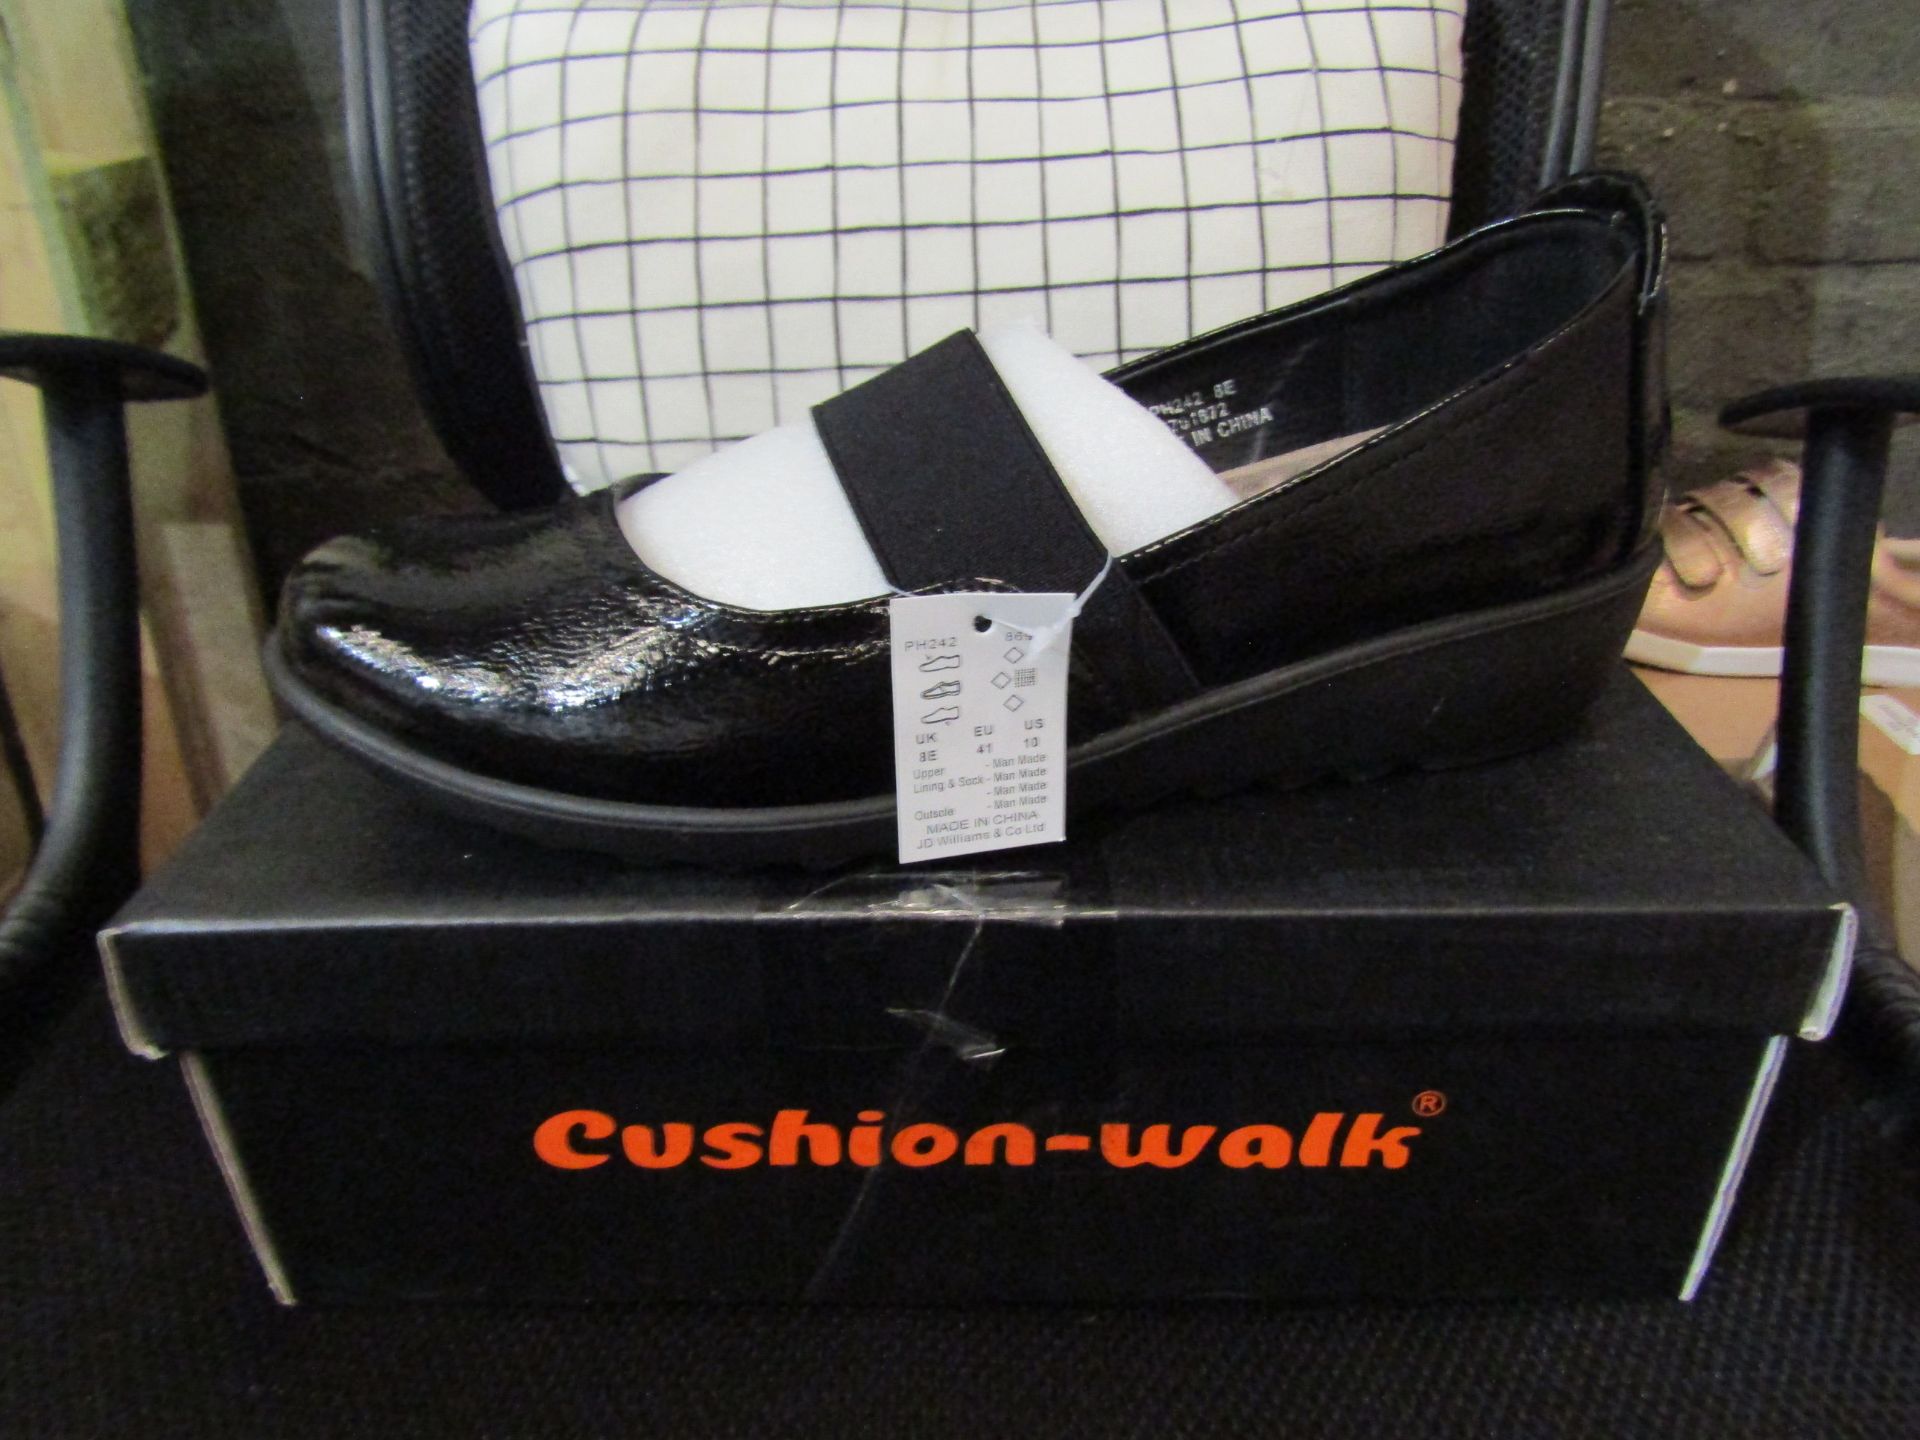 Ladies Shoes, Size Uk 8, Black, Unworn & Boxed. See Image.